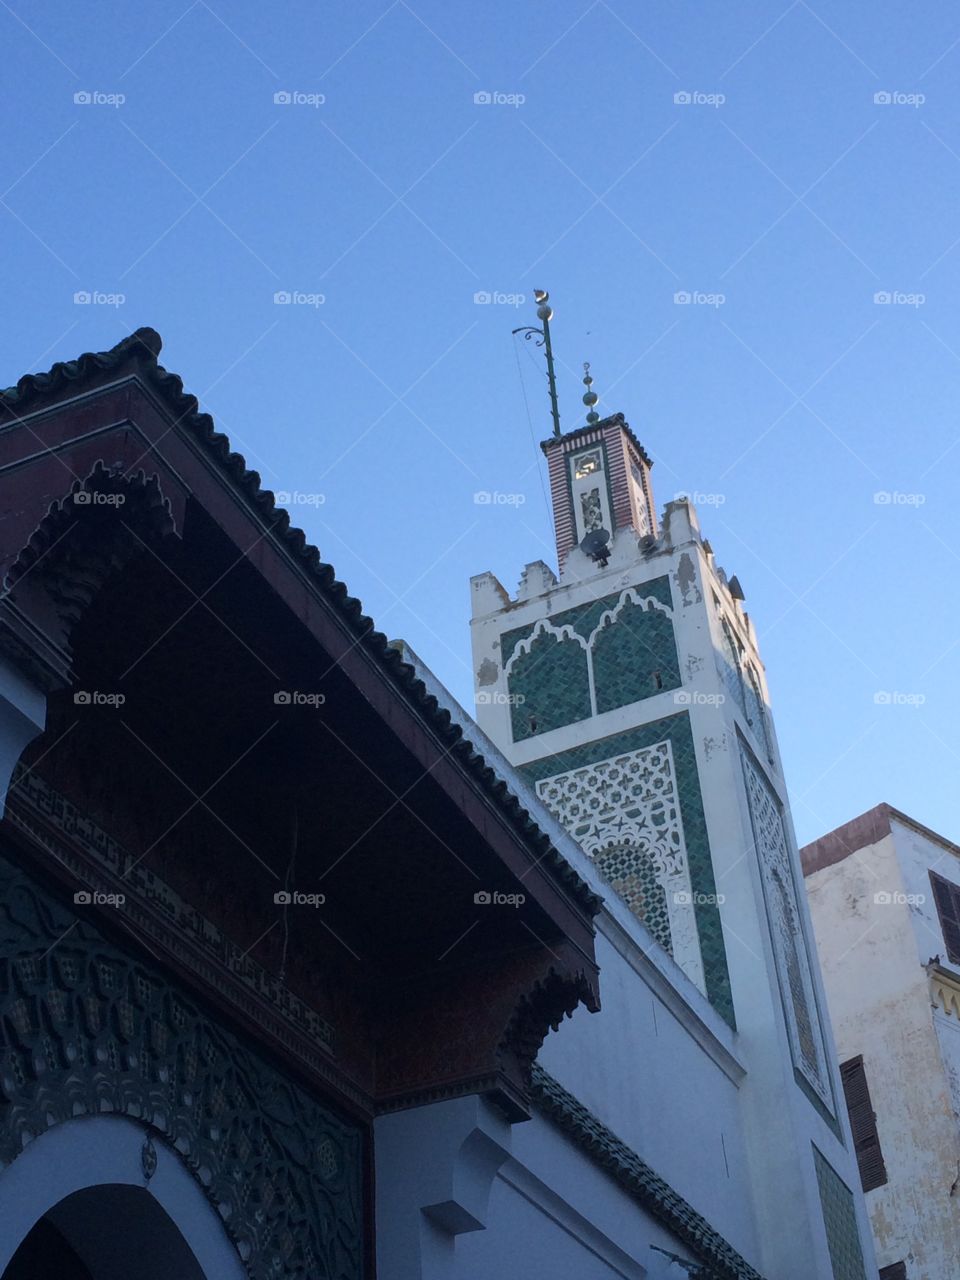 Moroccan architecture, Tangier